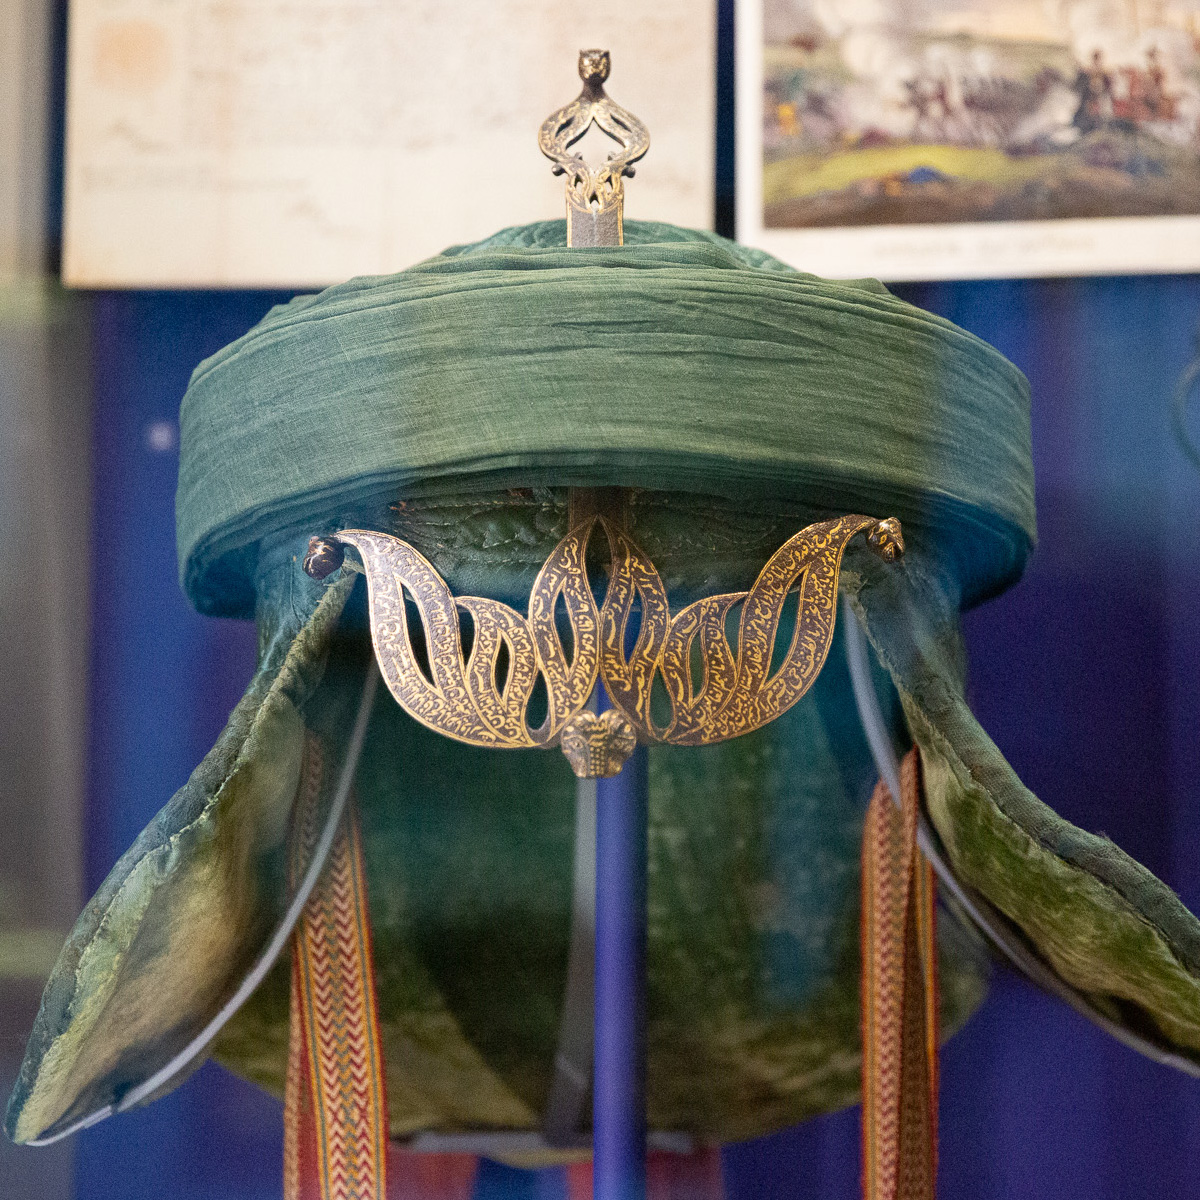 Tipu Sultan’s war turban, c1799